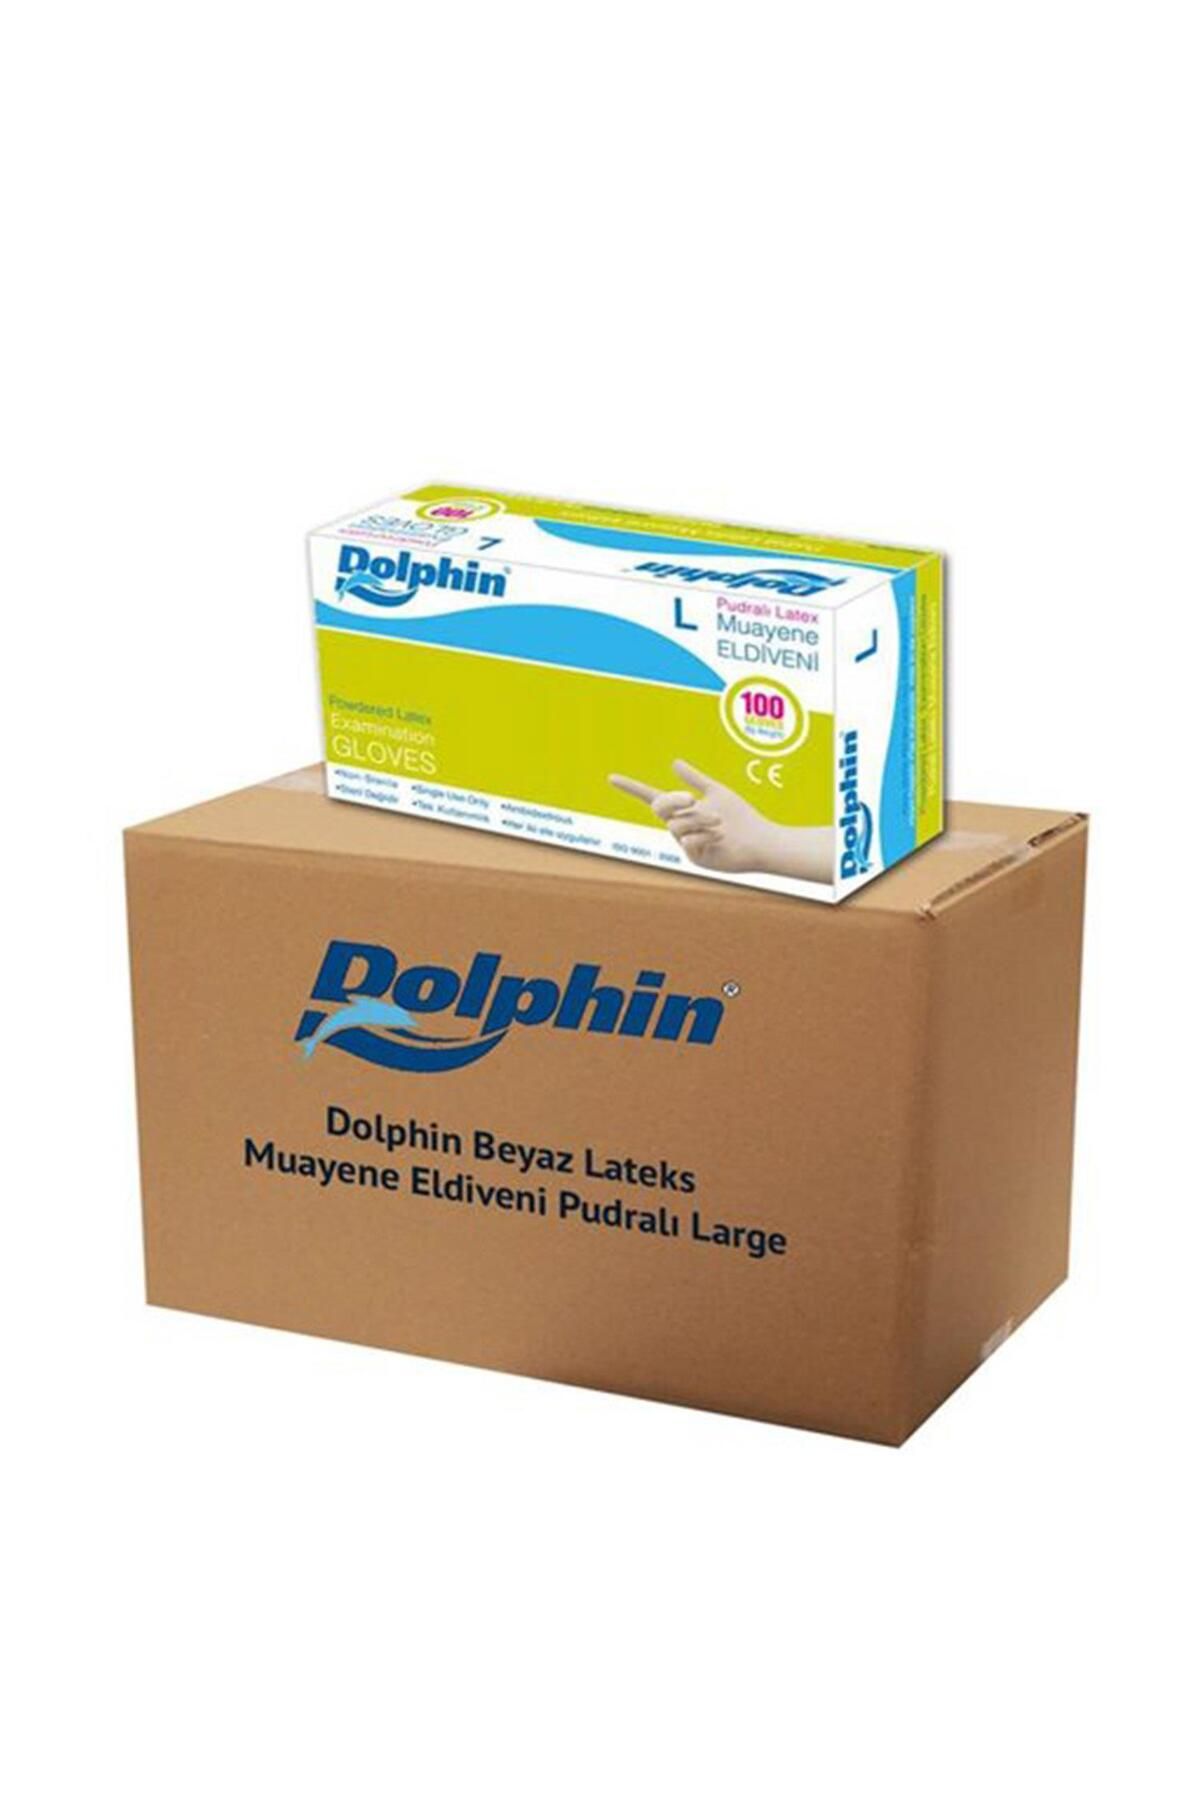 Dolphin Tek Kullanımlık Lateks Beyaz Pudralı Large Muayne Eldiveni - 20 Adet 100'lü Paket / Koli